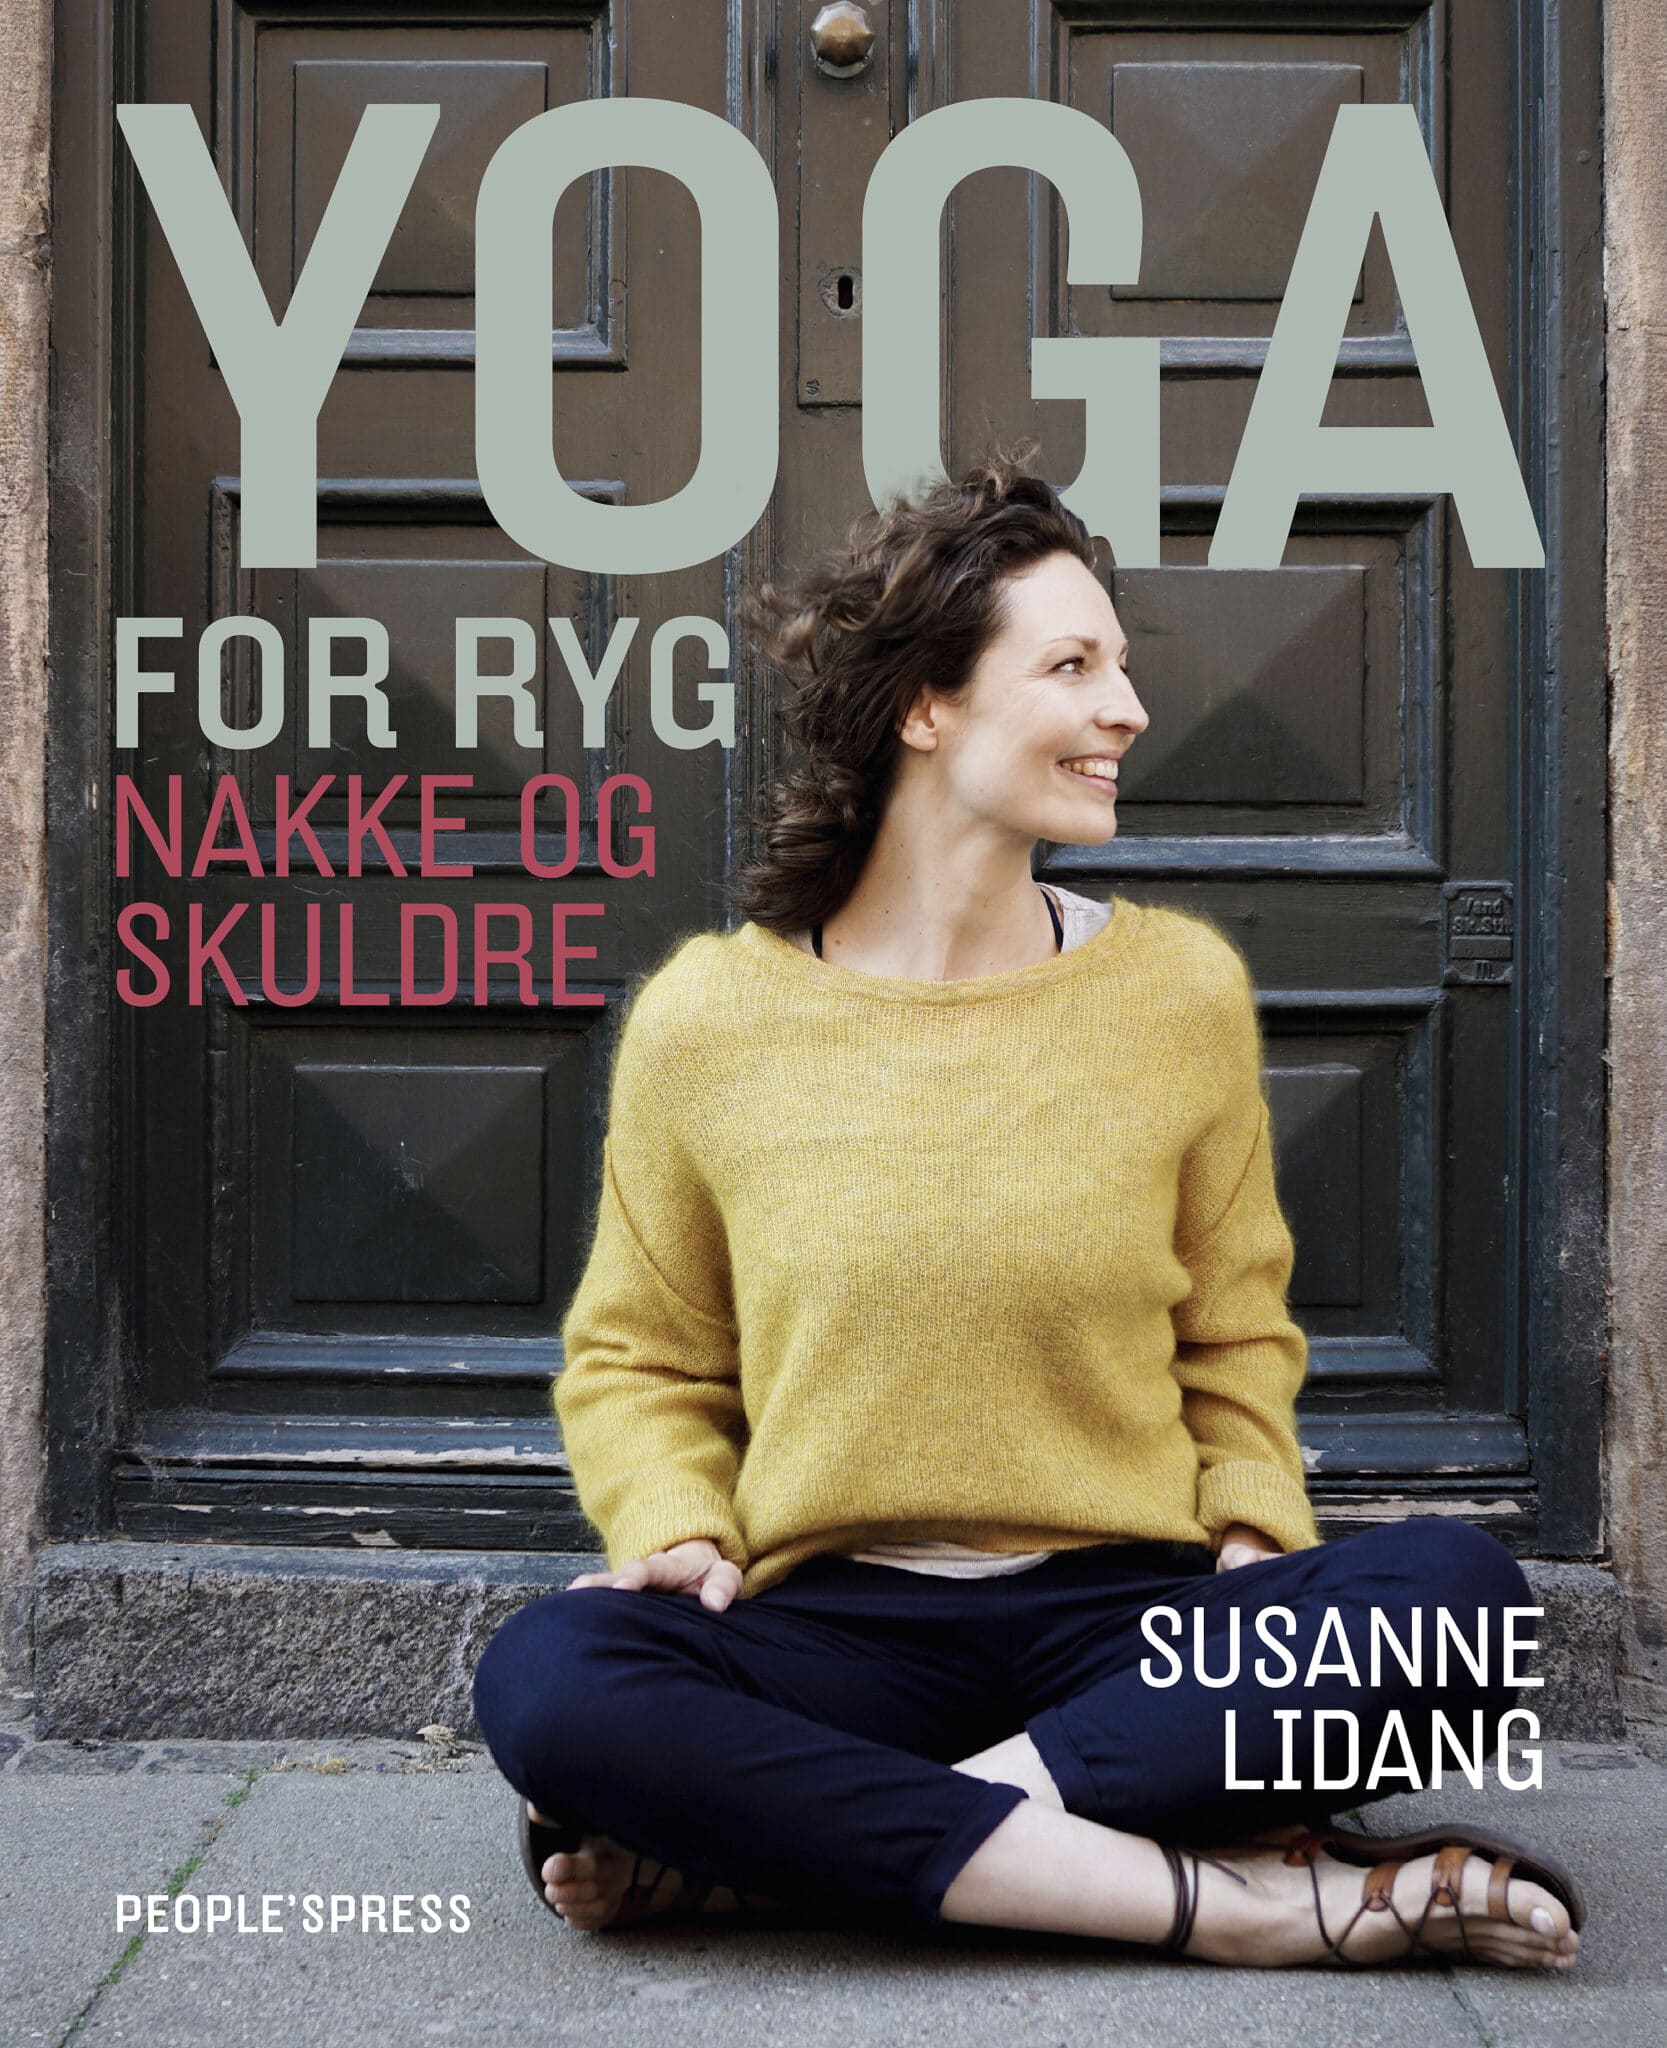 Eksklusiv yoga-oplevelse med Susanne Lidang på Hjorths Badehotel.